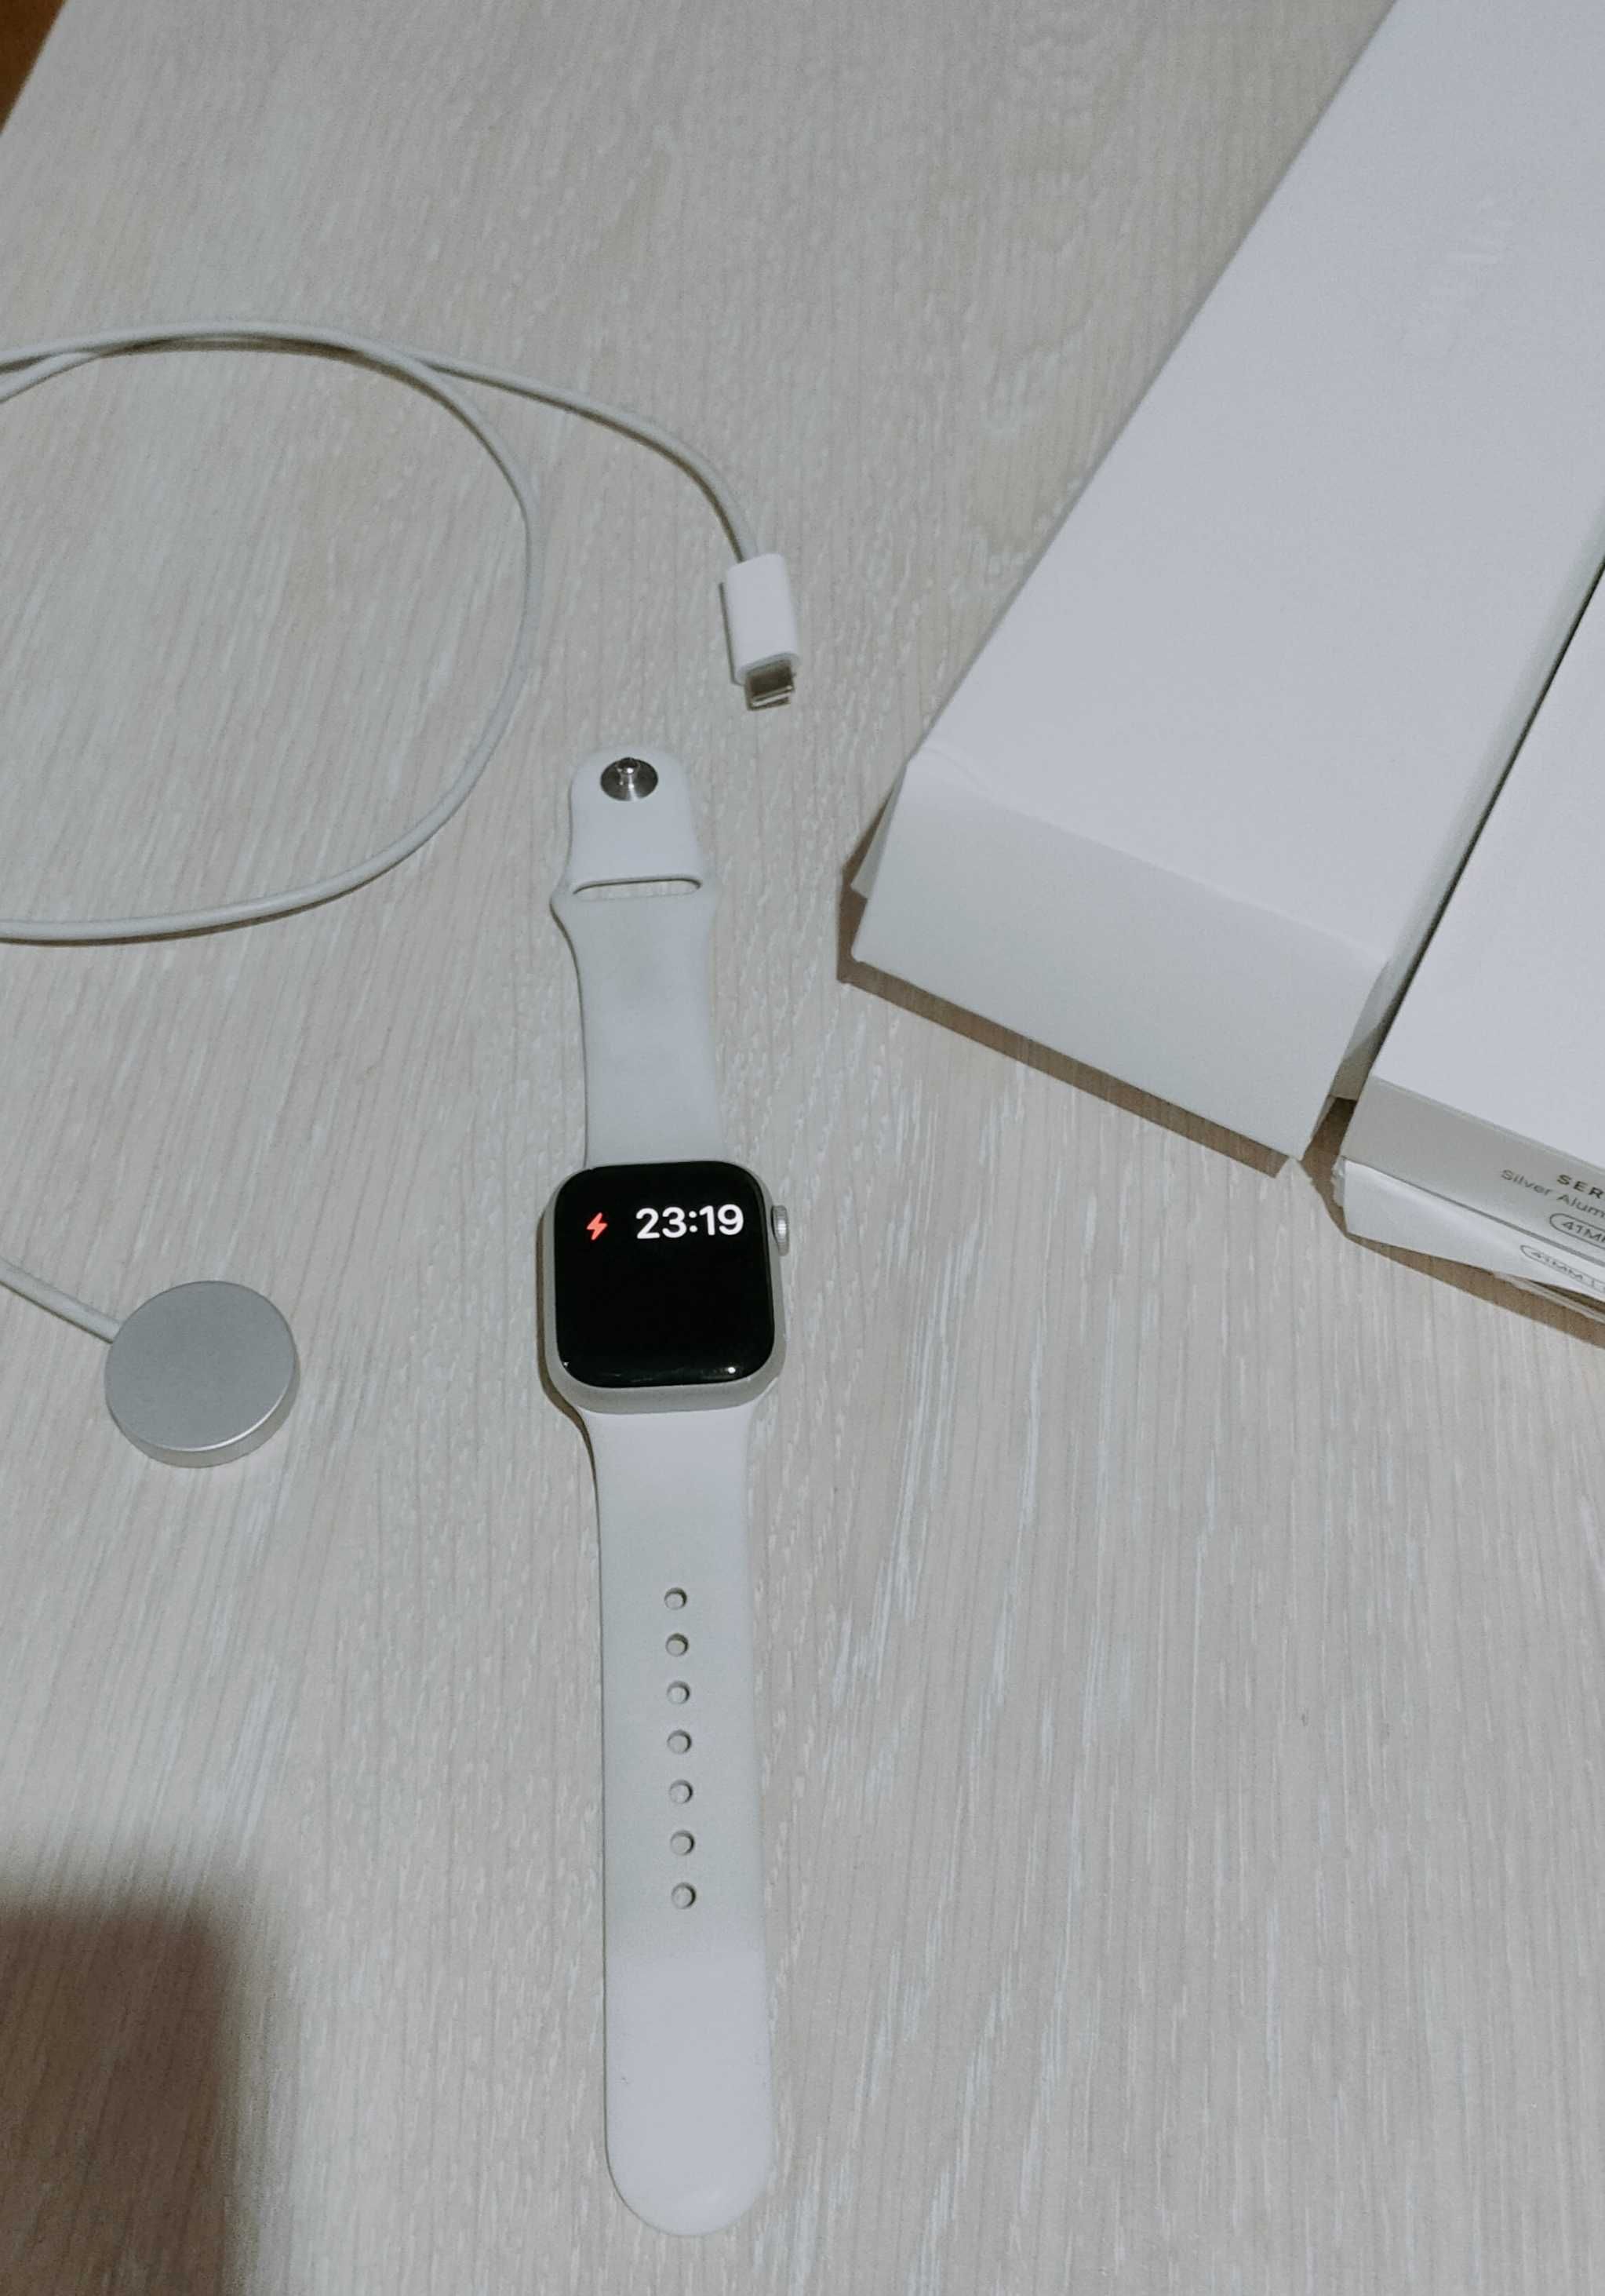 Apple watch 8 серия